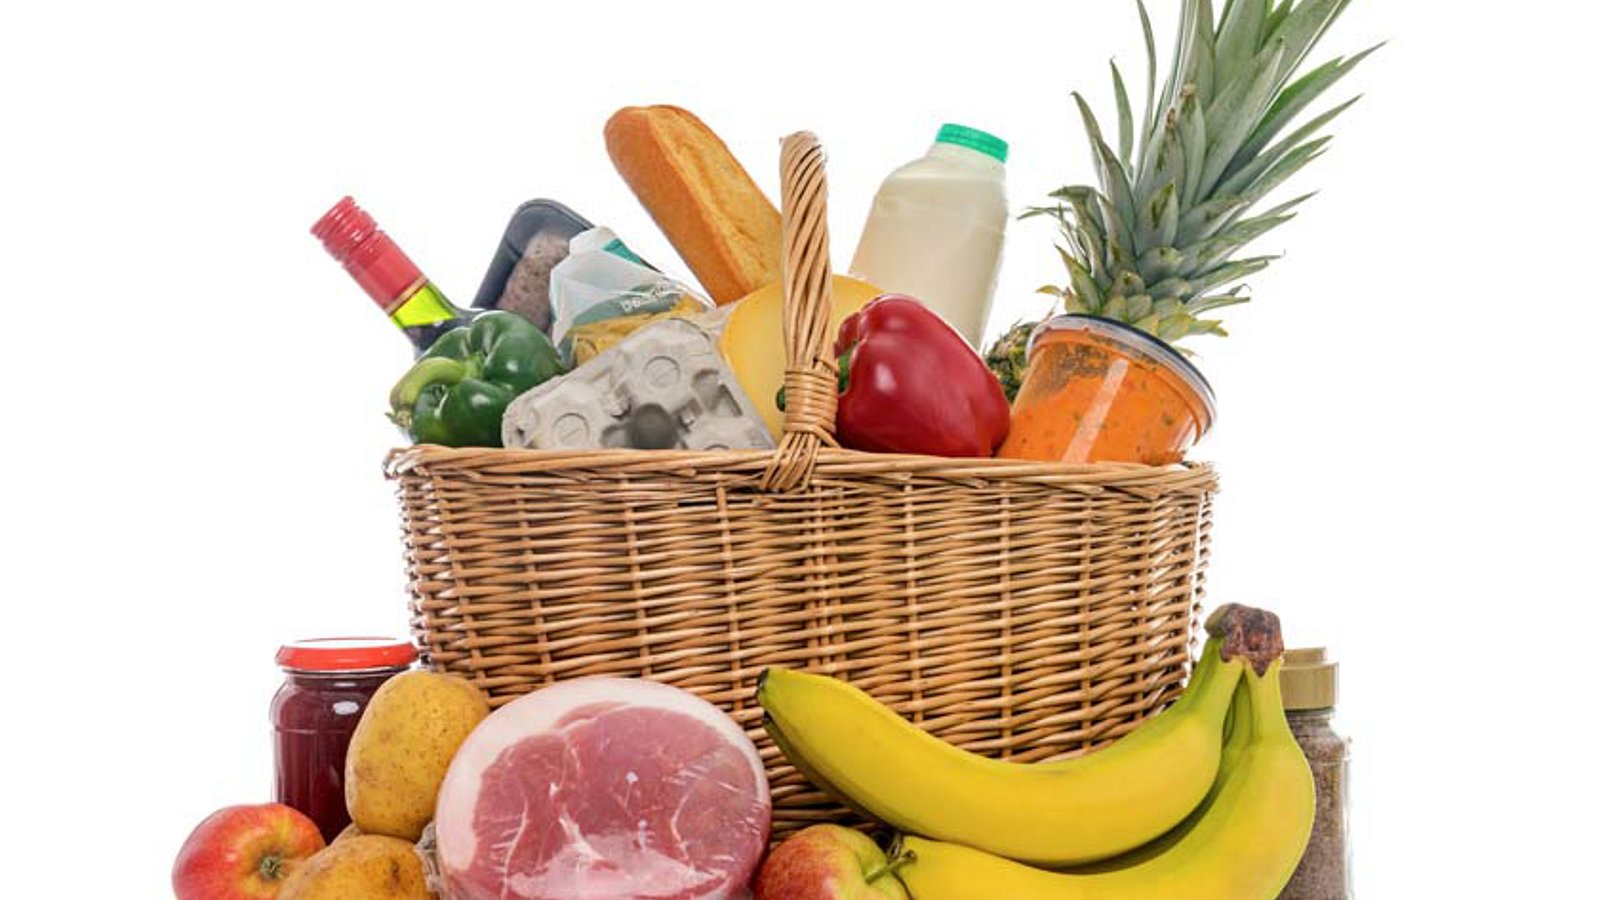 Einkaufskorb voller Sachen wie Wein, Milch, Bananen, Eiern, Schinken und Kartoffeln